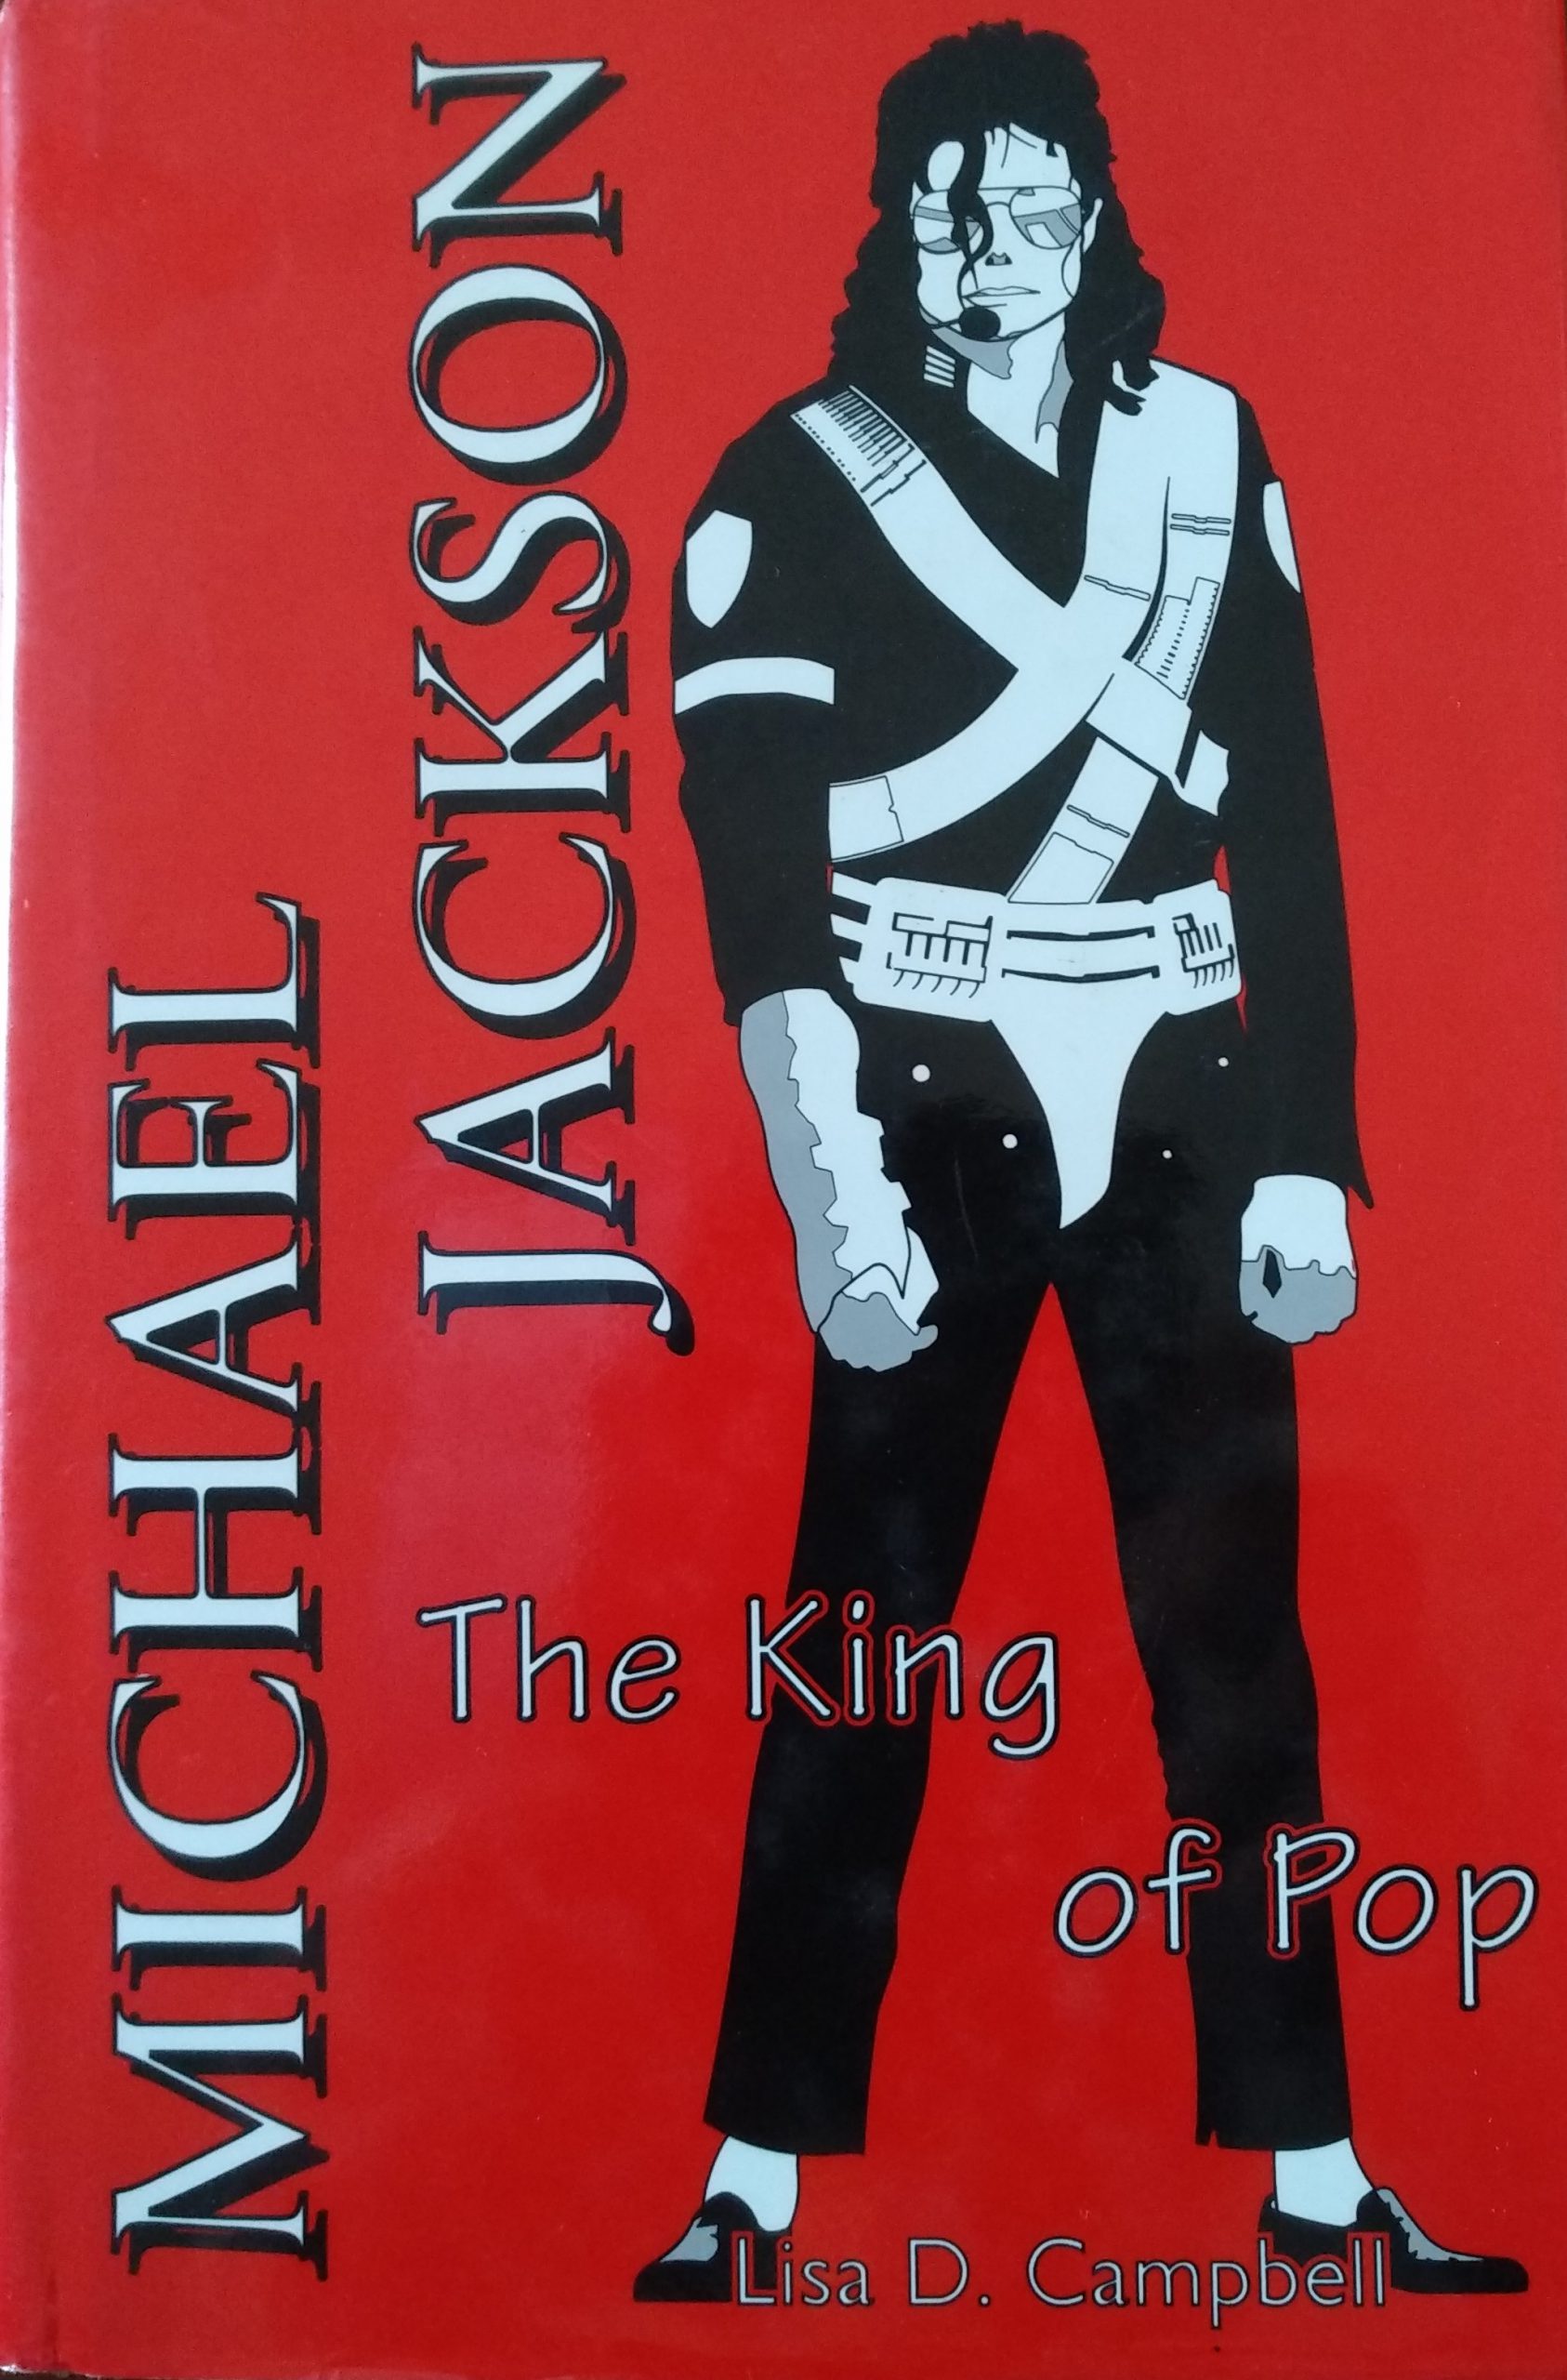 A caccia di libri contro Michael Jackson (2° parte)